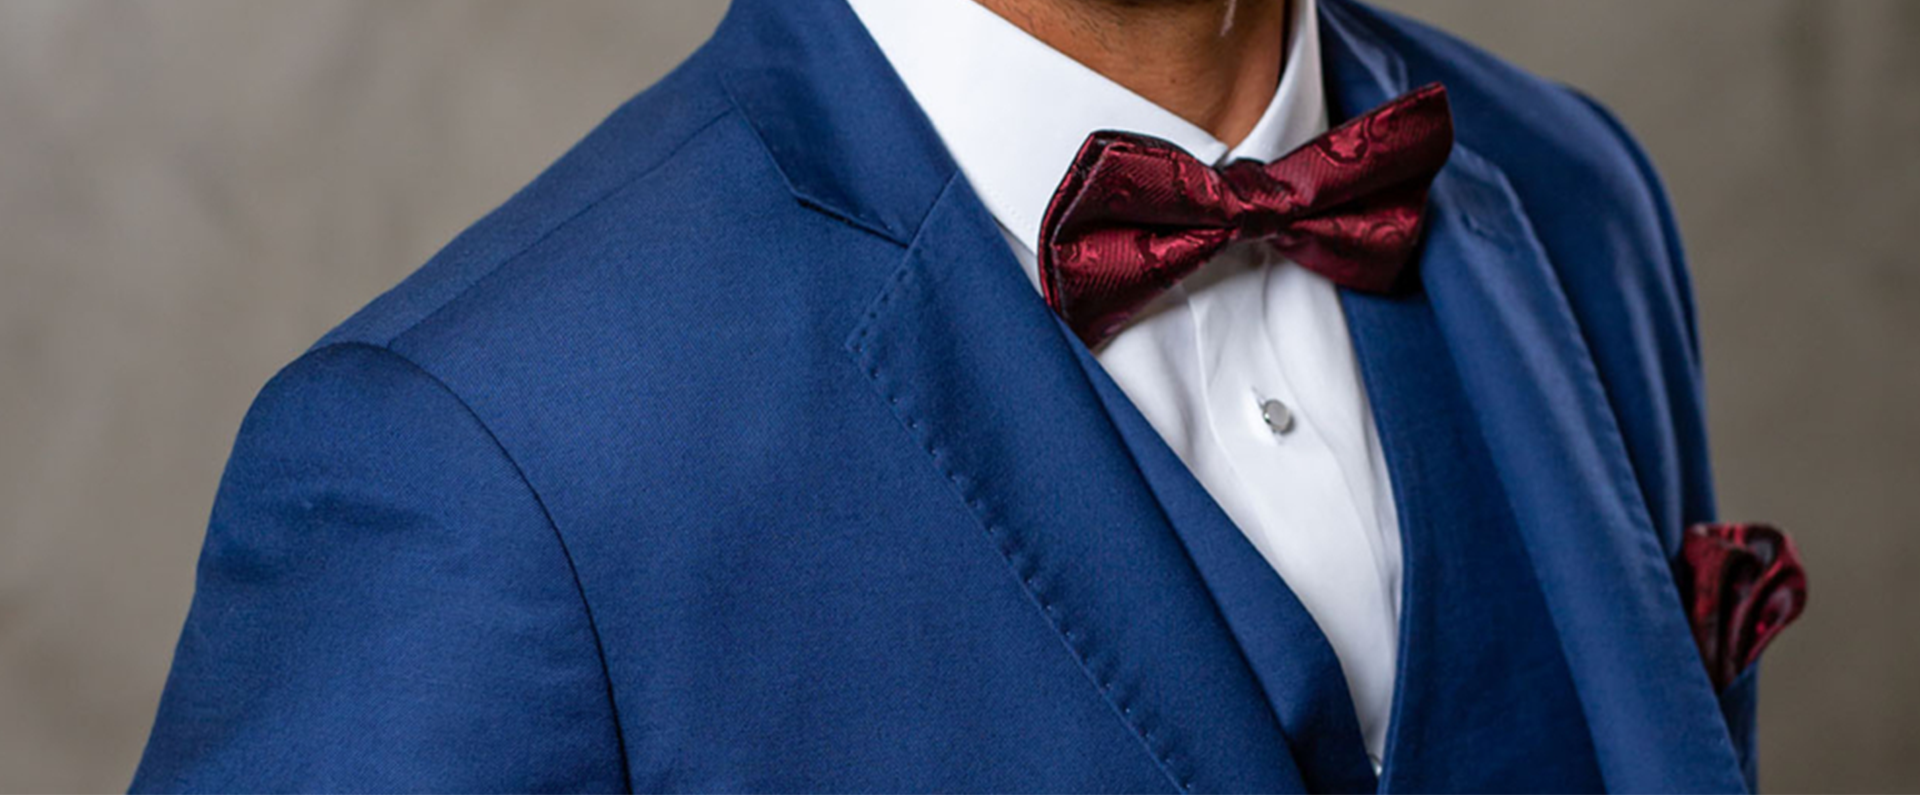 Terno azul: como usar a cor dos noivos da forma correta no seu casamento